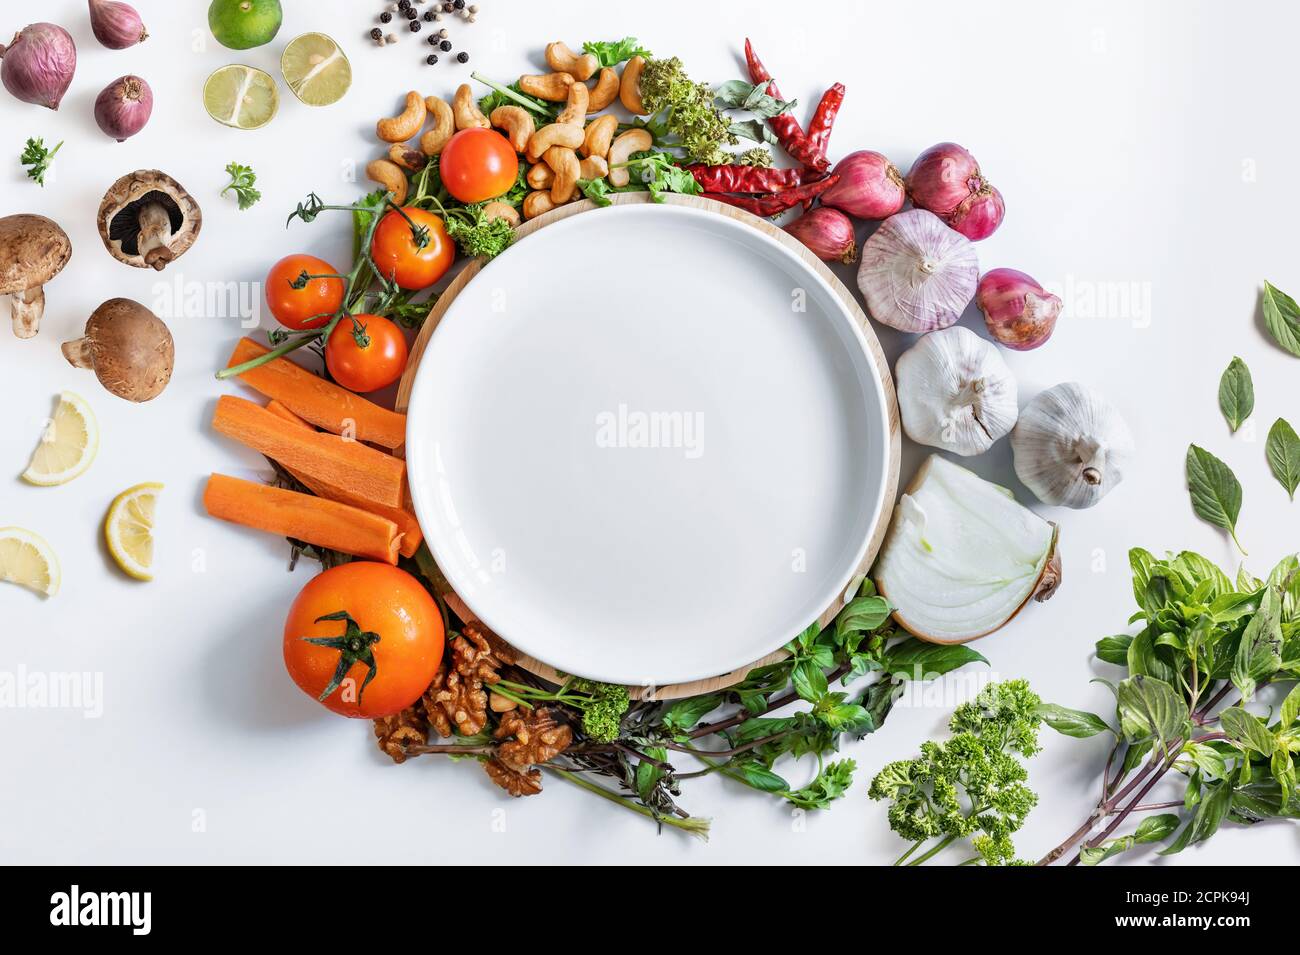 Alimentación saludable. Plato blanco de cerámica rodeado de verduras frescas y saludables, sobre fondo blanco Foto de stock